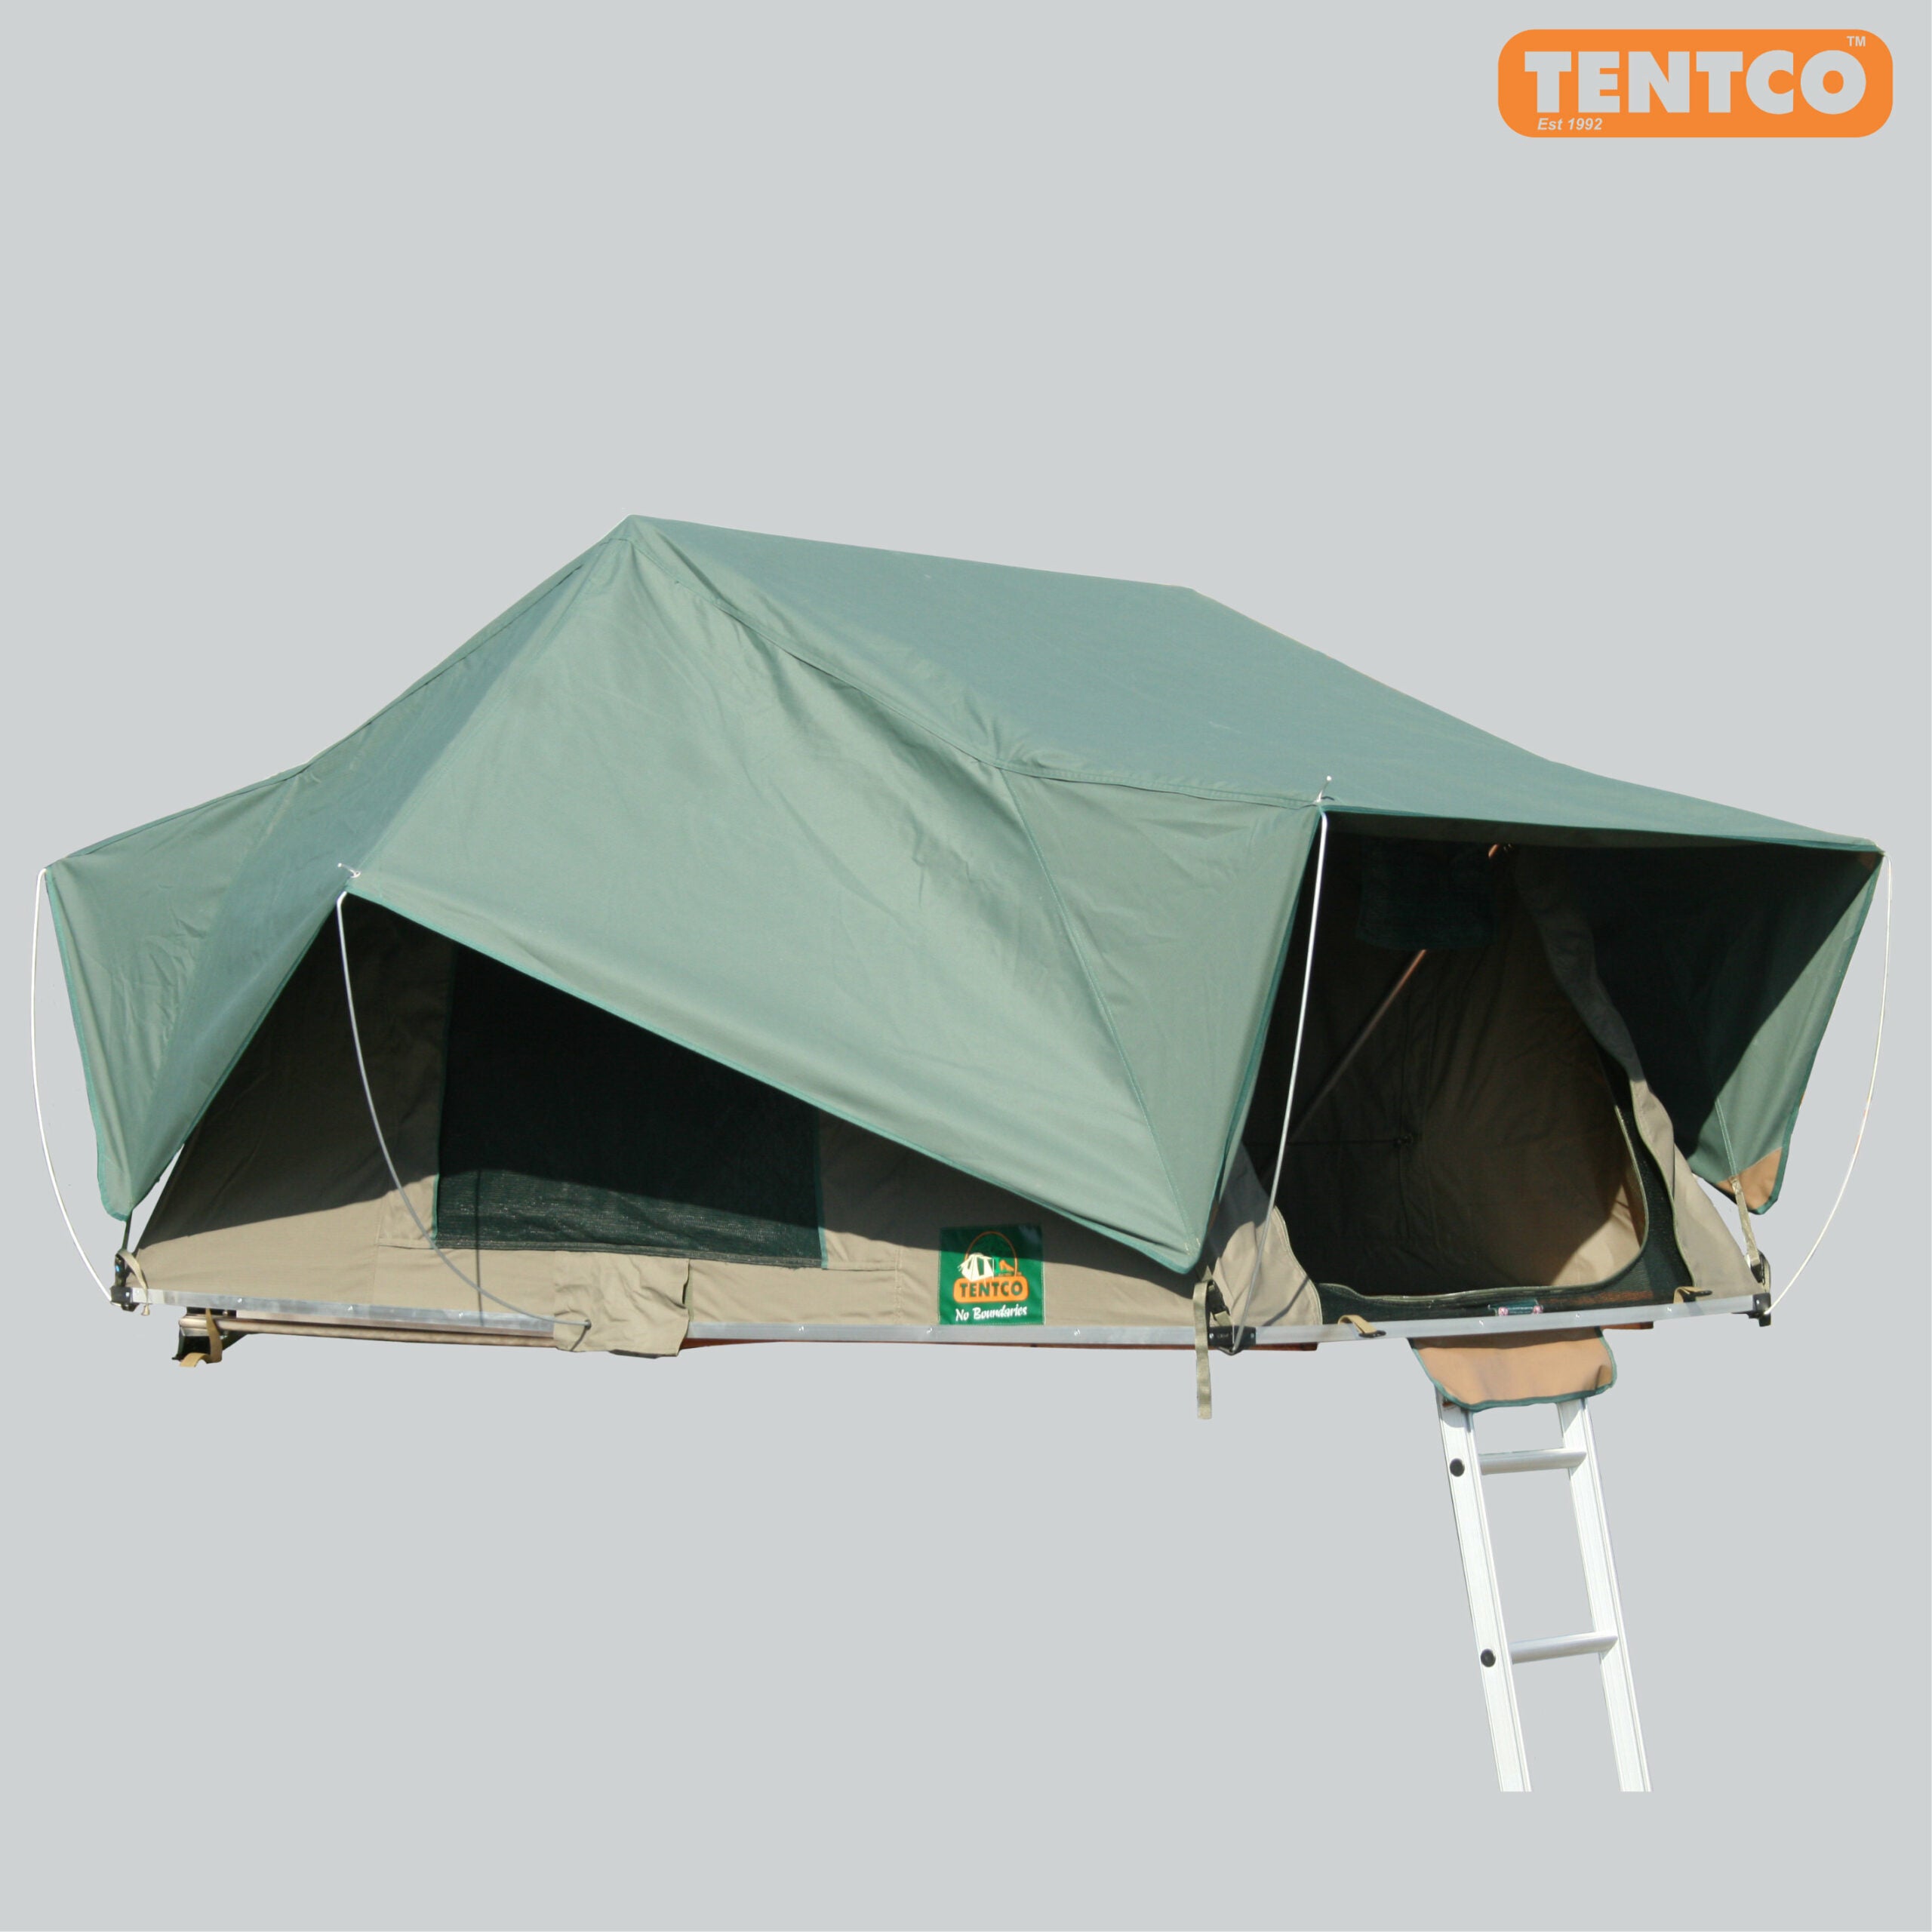 Tentco 1.4 Roof Top Tent